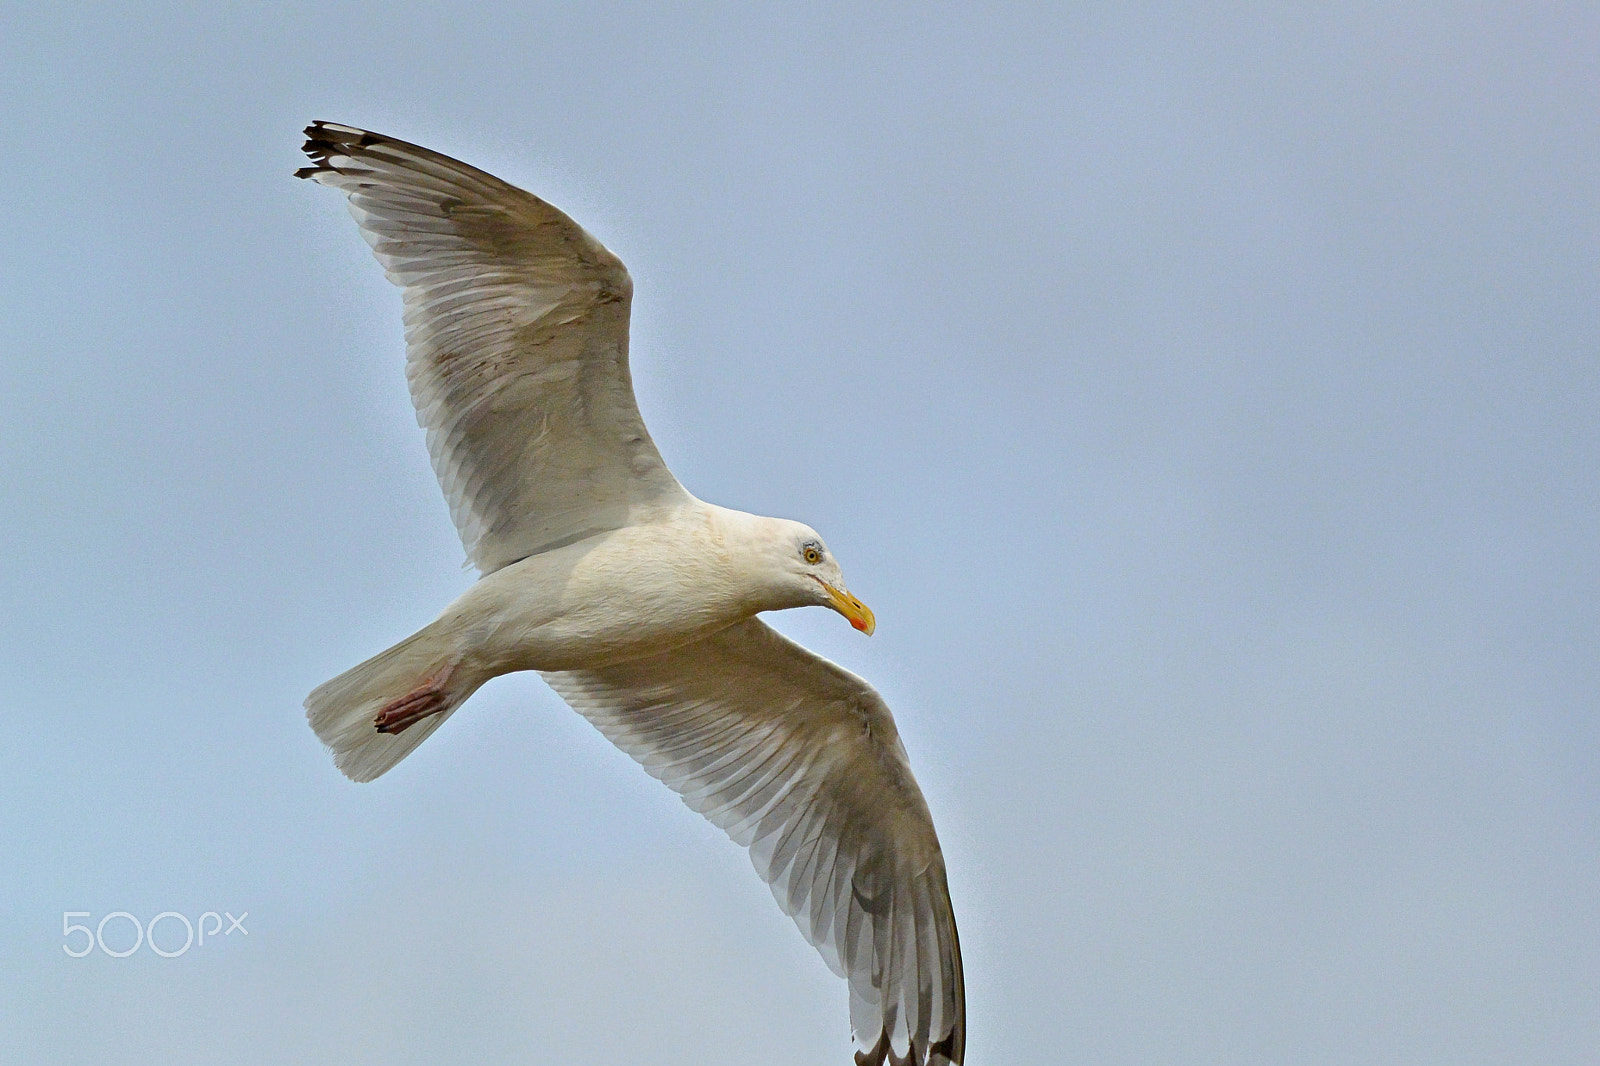 Nikon 1 V2 sample photo. Sea gull in flight photography